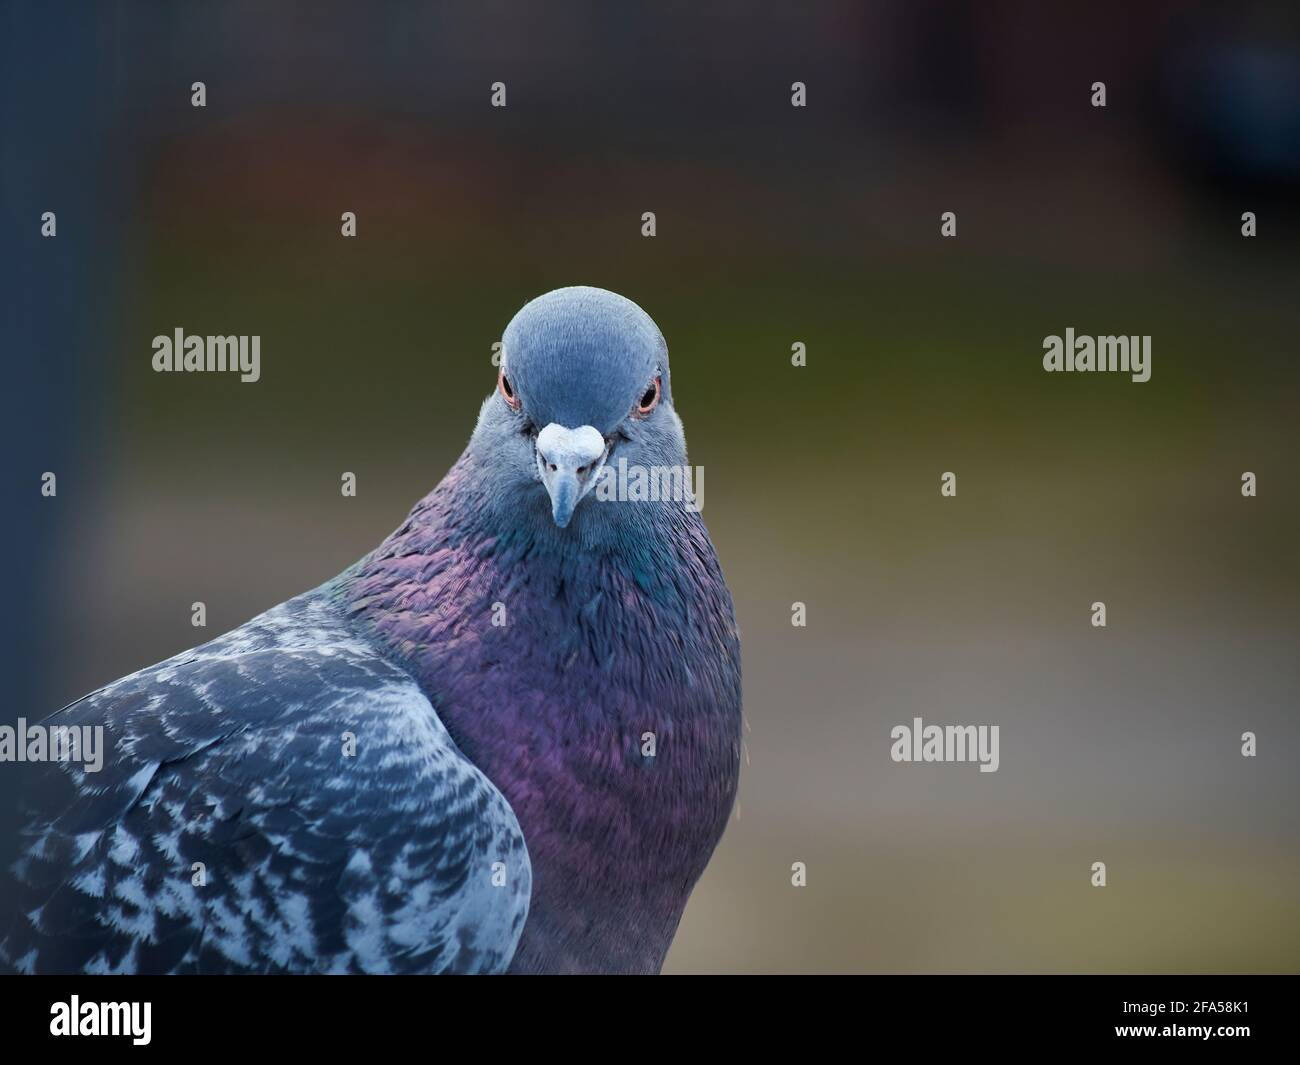 Eine wilde Taube, etwas schöner und präbesitzender als üblich, schaut vor einem stark defokussierte Hintergrund vor die Kamera. Stockfoto